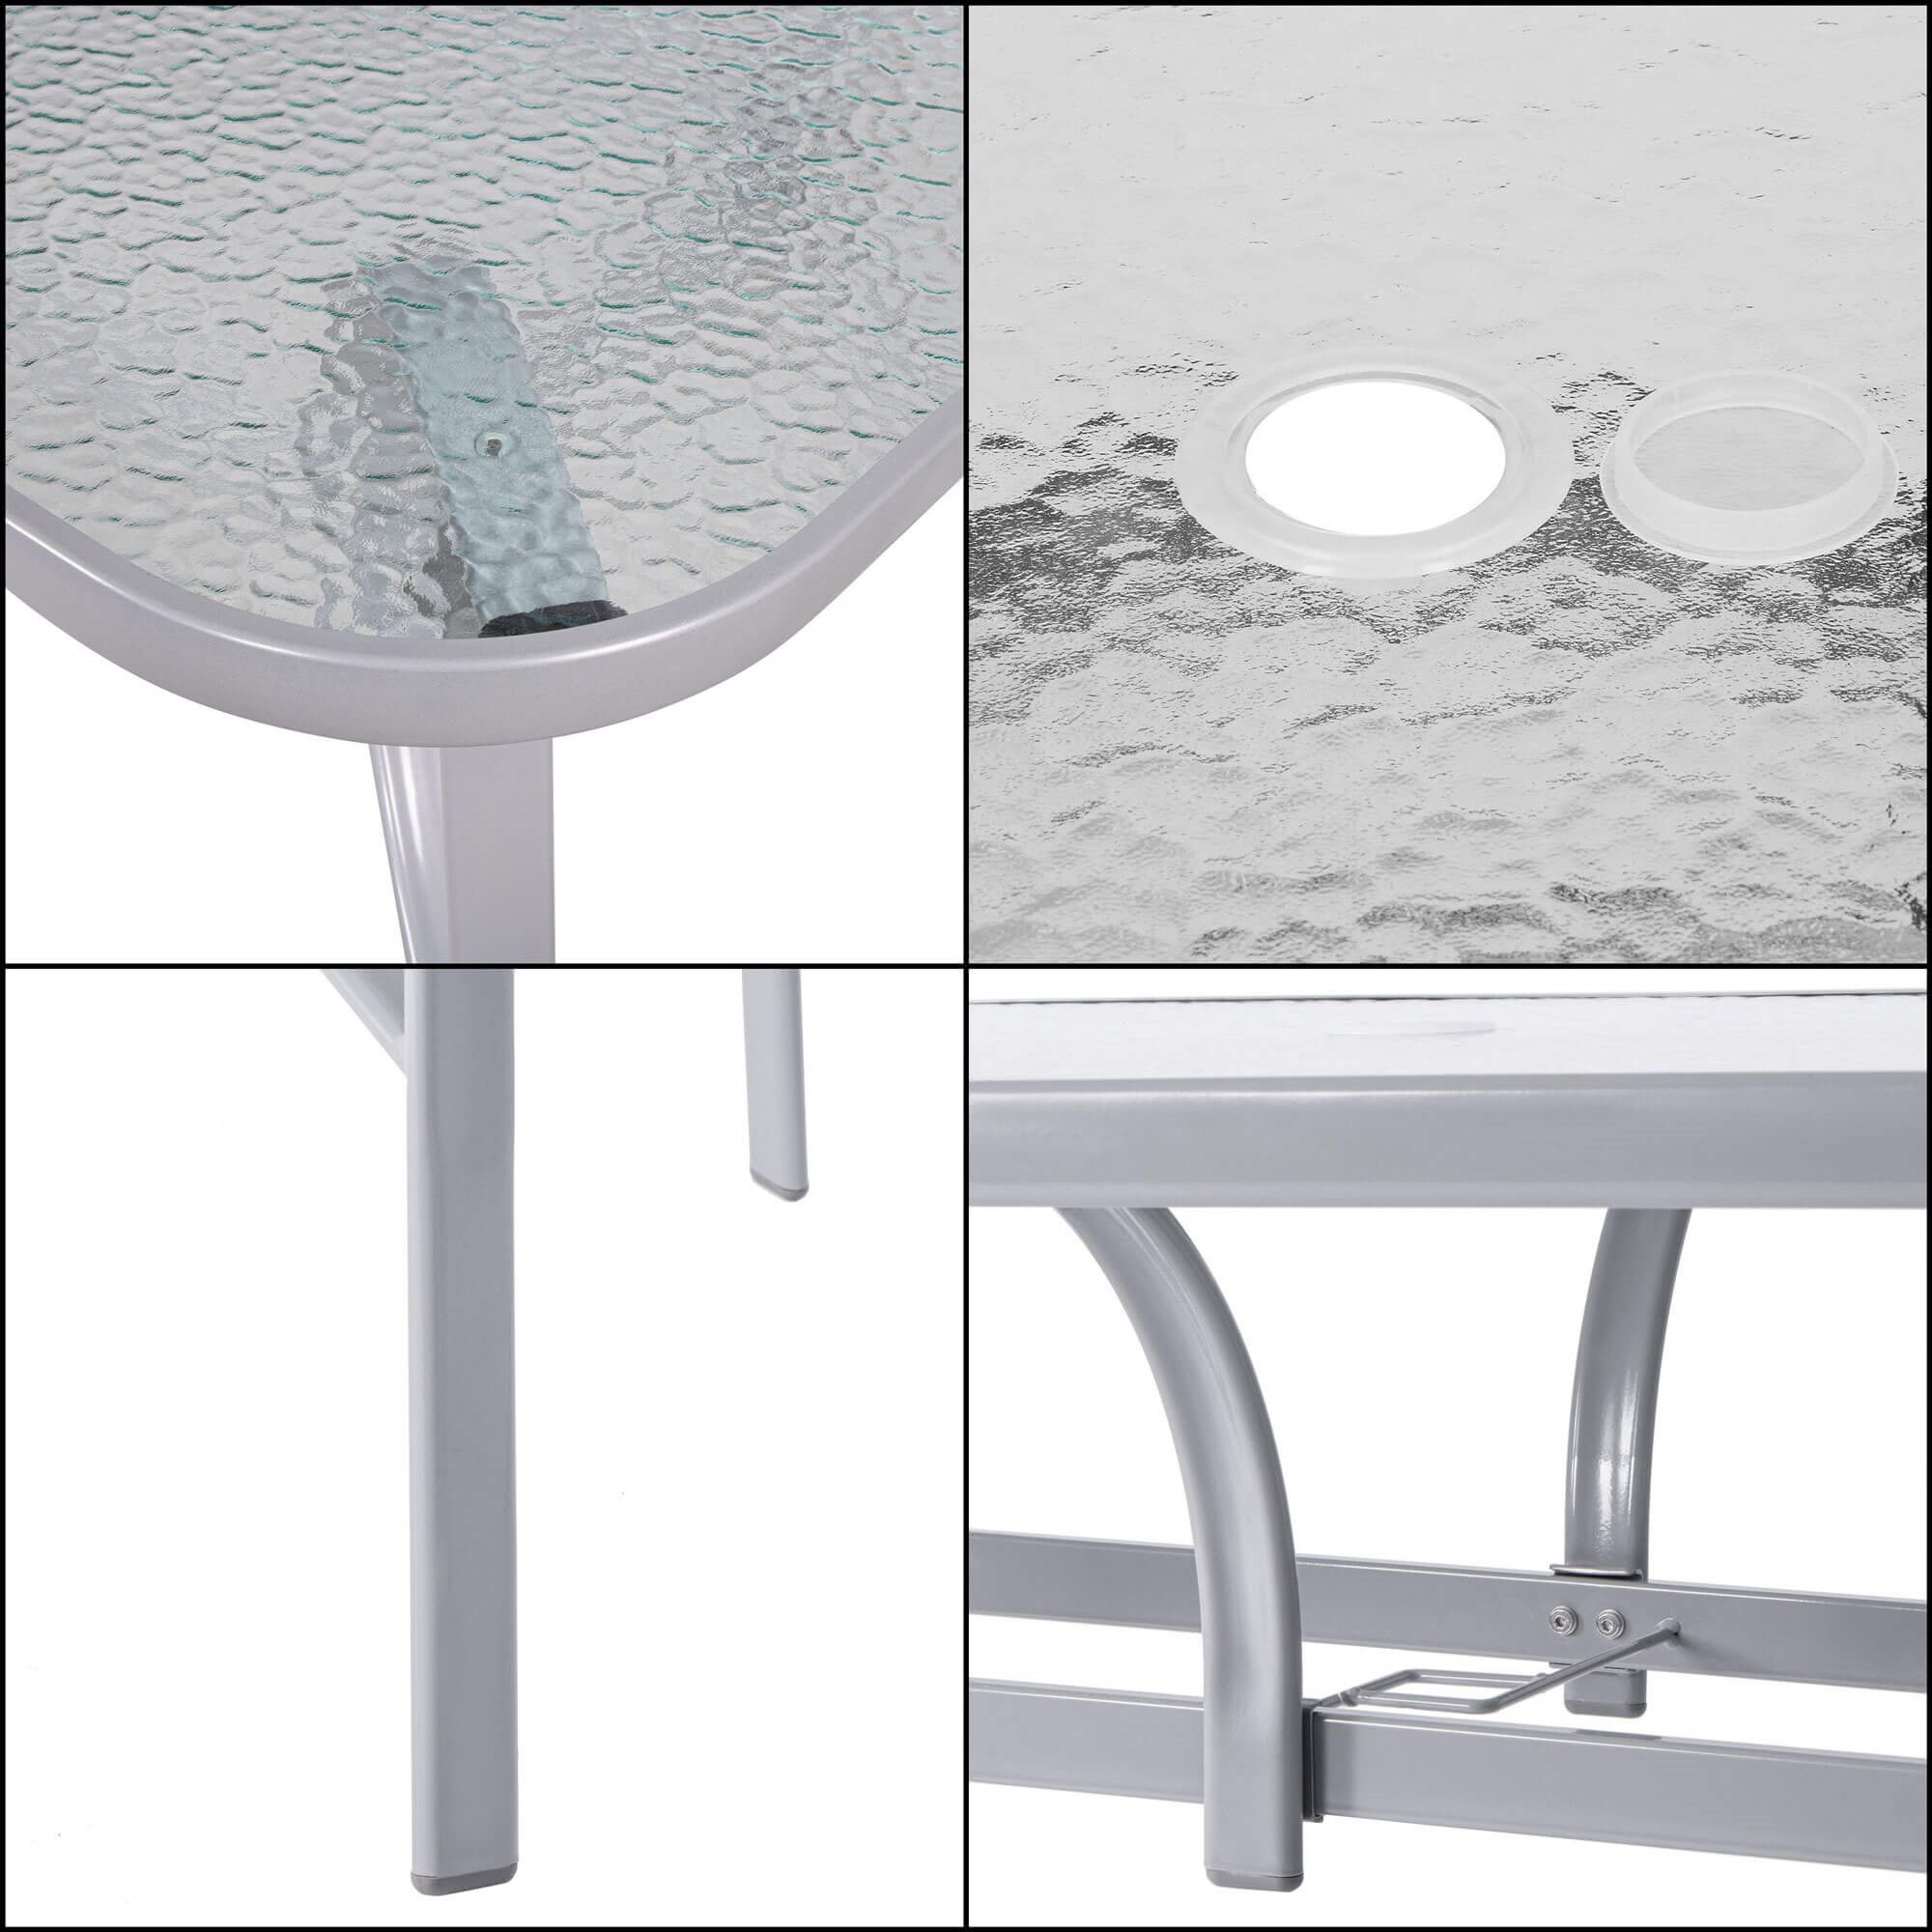 Záhradný stôl 150cm: kov + sklo, šedý